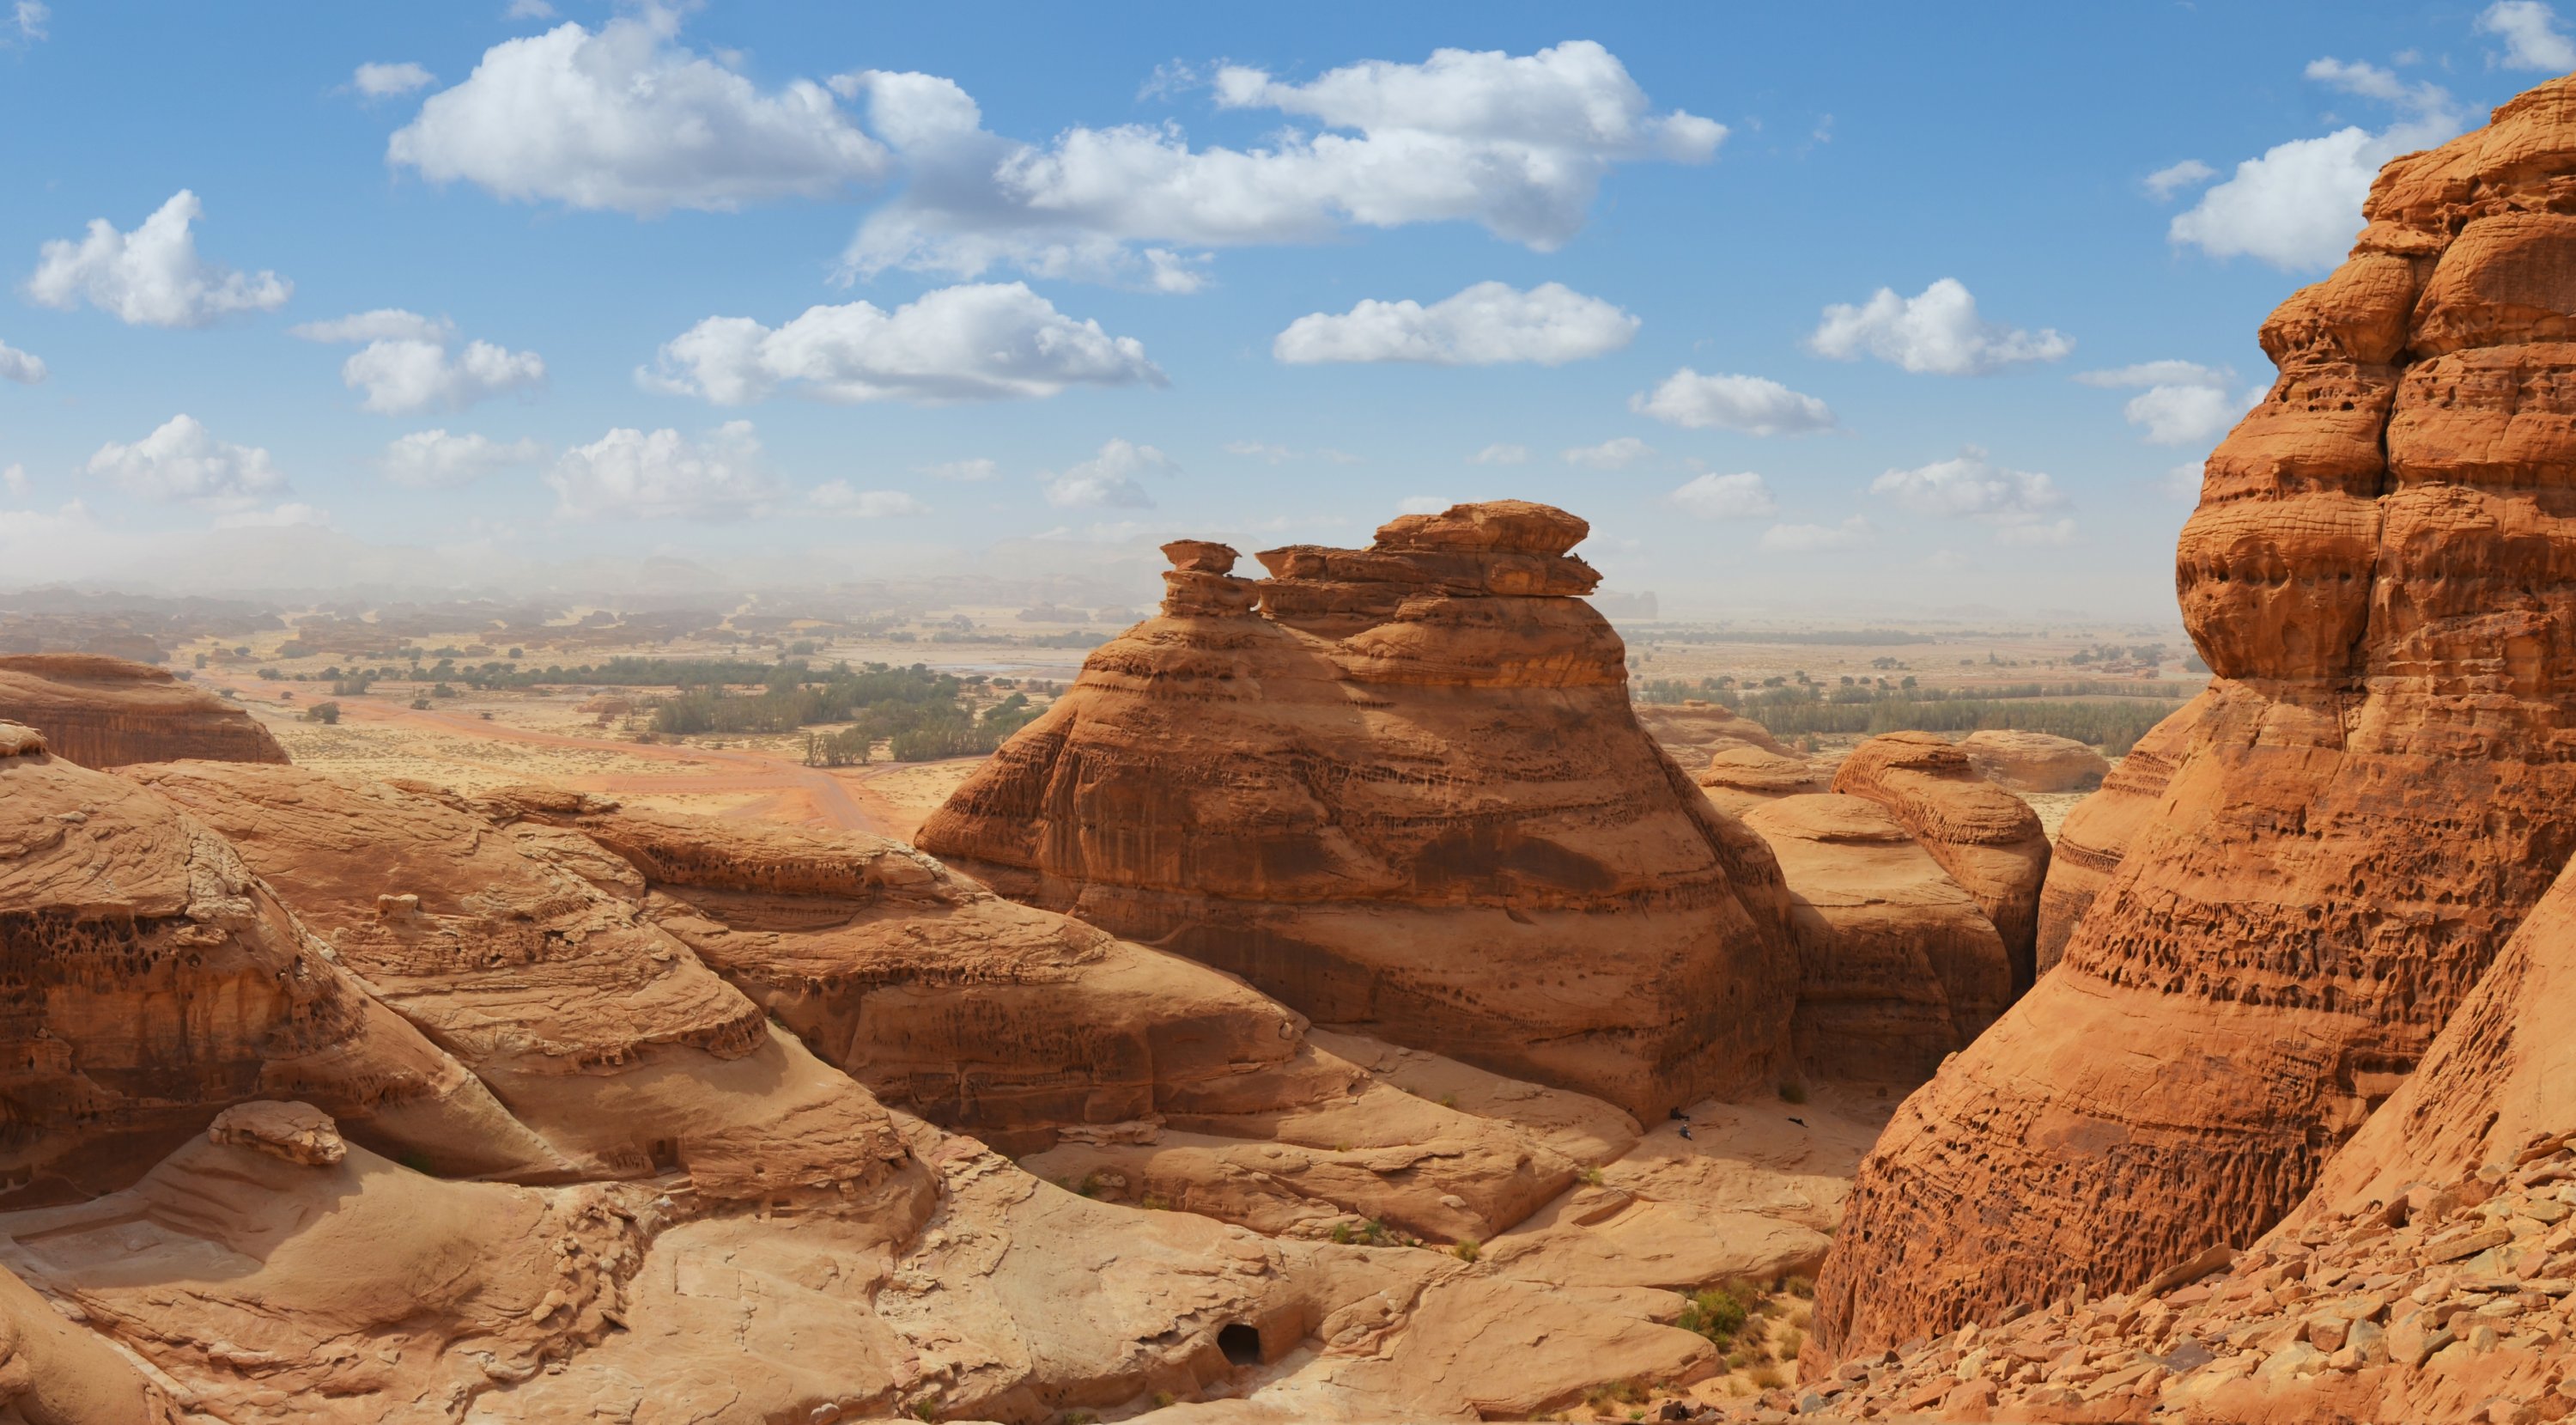 Camel Carvings In Saudi Desert Could Be, Saudi Arabia Landscape